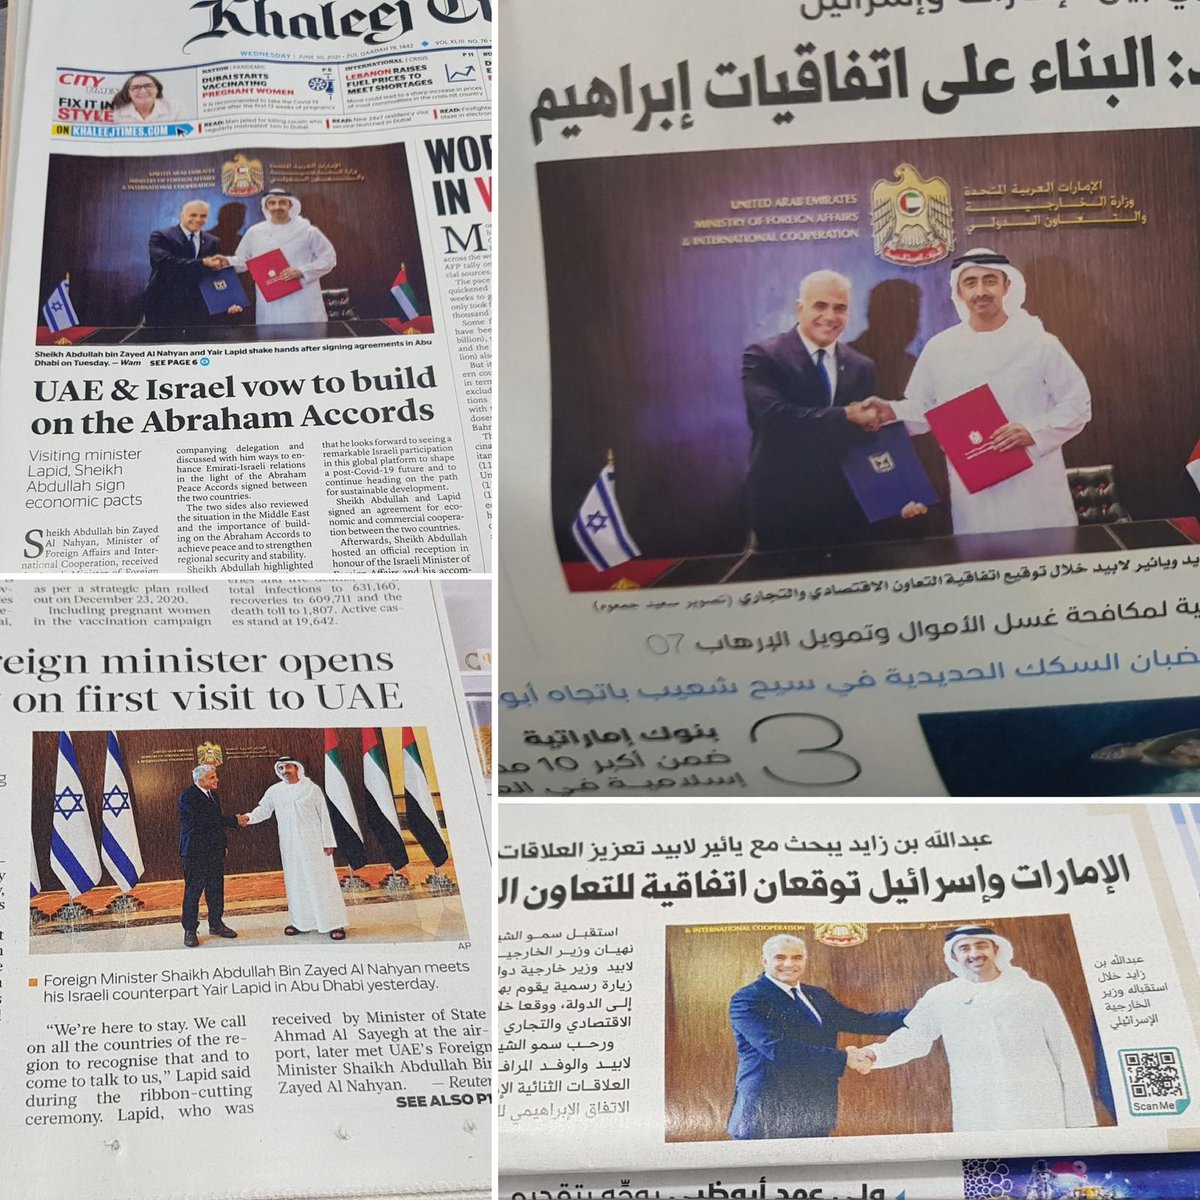 الصحف الإماراتية تحتفل بزيارة وزير الخارجية الإسرائيلي يائير لابيد إلى الإمارات